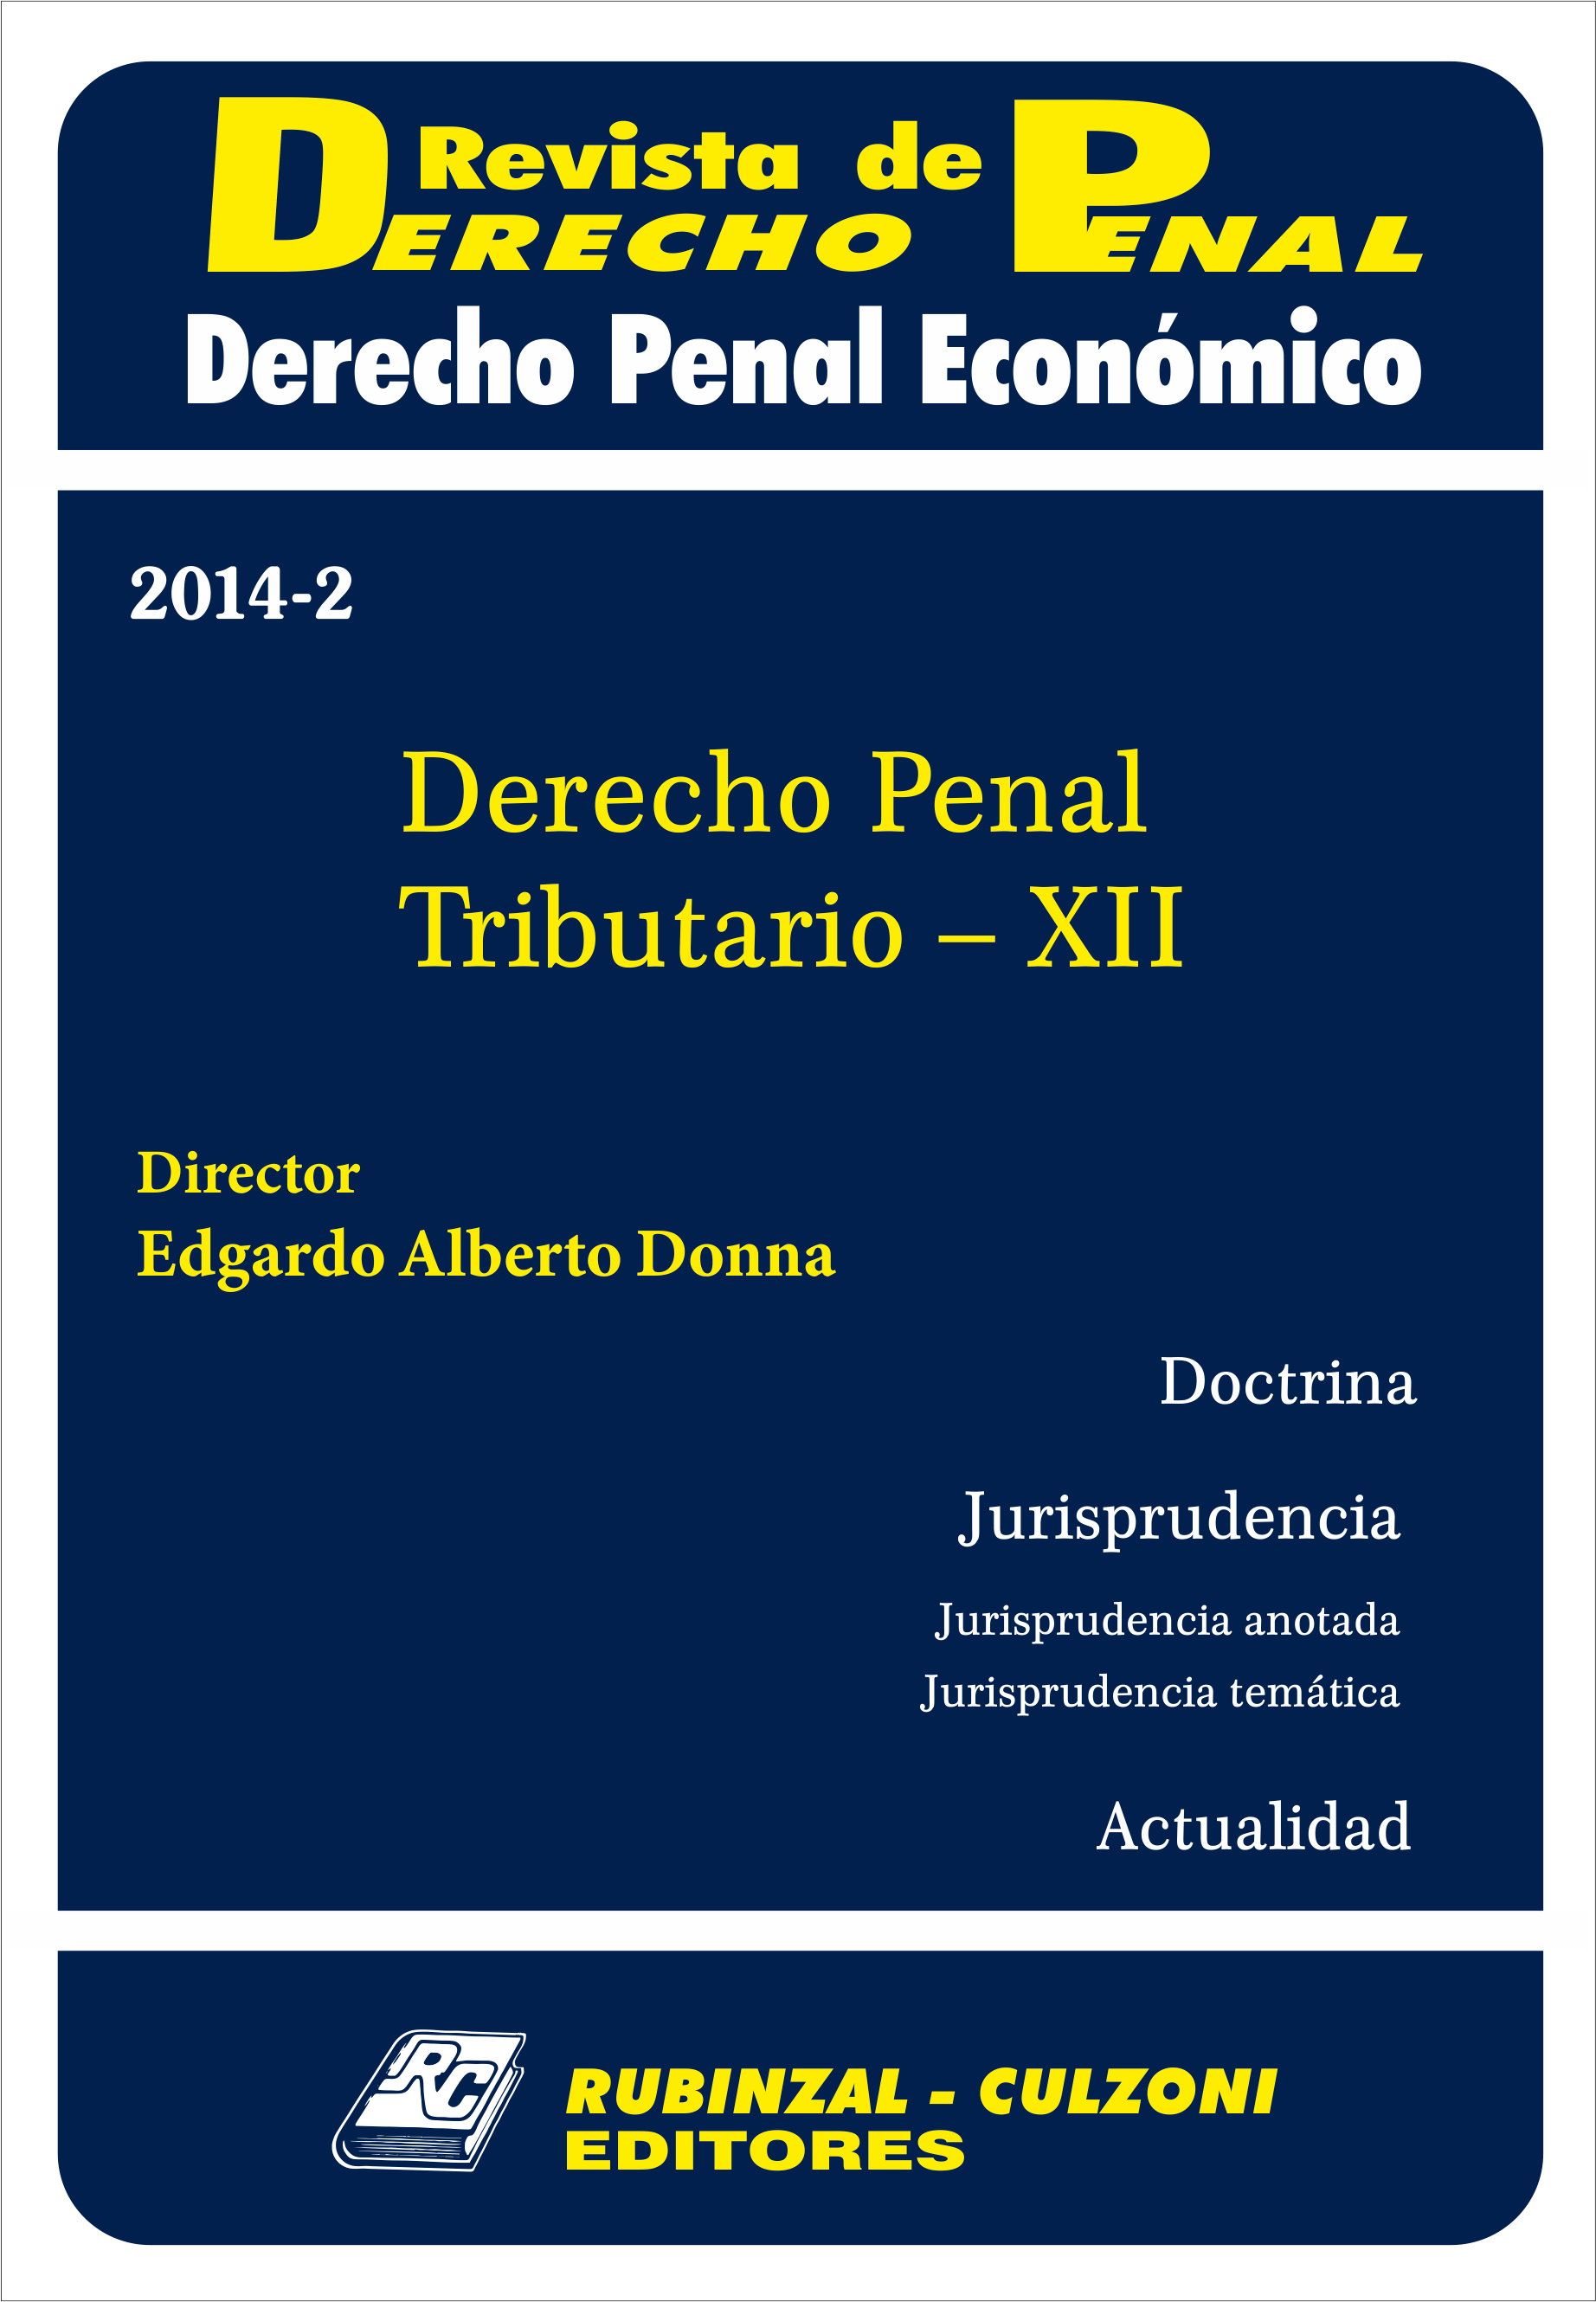 Revista de Derecho Penal Económico - Derecho Penal Tributario - XII.